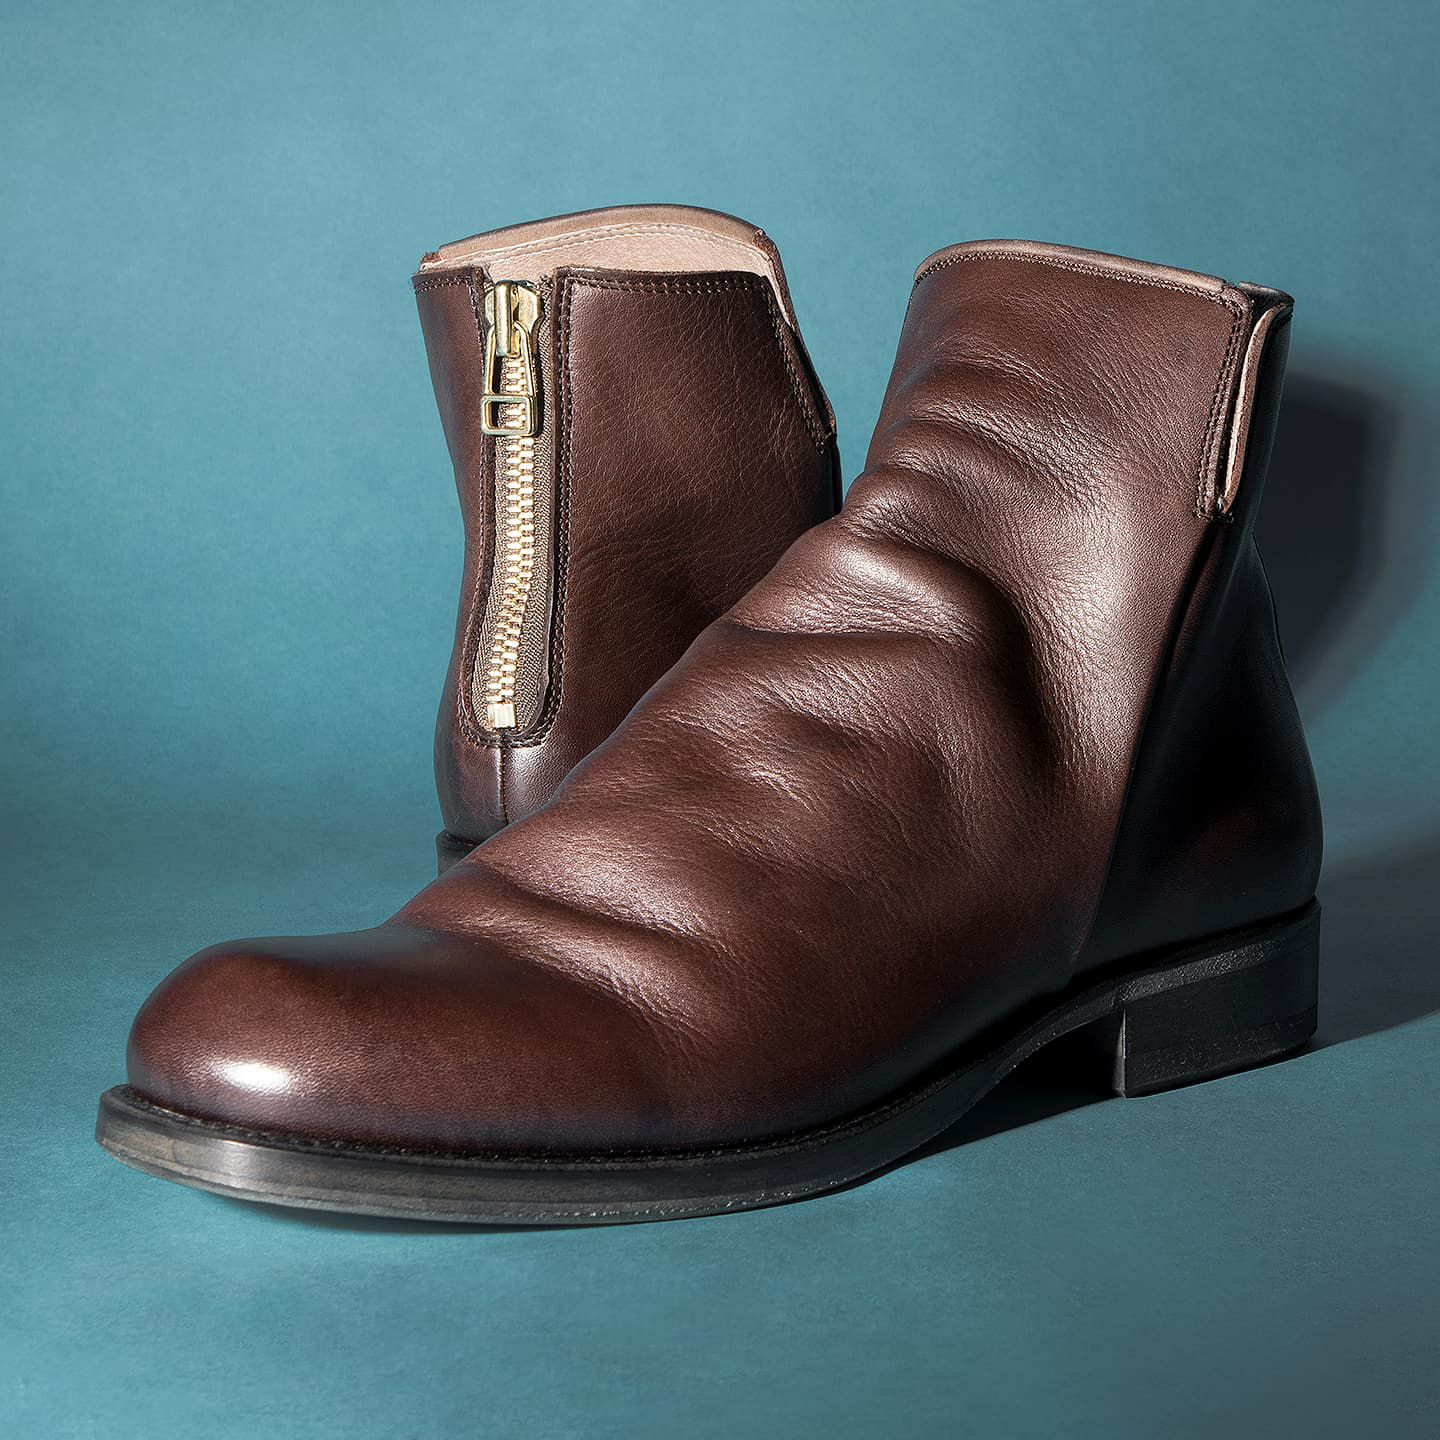 靴/シューズエイケイエム／AKM バックジップブーツ シューズ 靴 メンズ 男性 男性用レザー 革 本革 ブラウン 茶  G021-COW002 back zip boots italian cow leather TRAPPER プレーントゥ